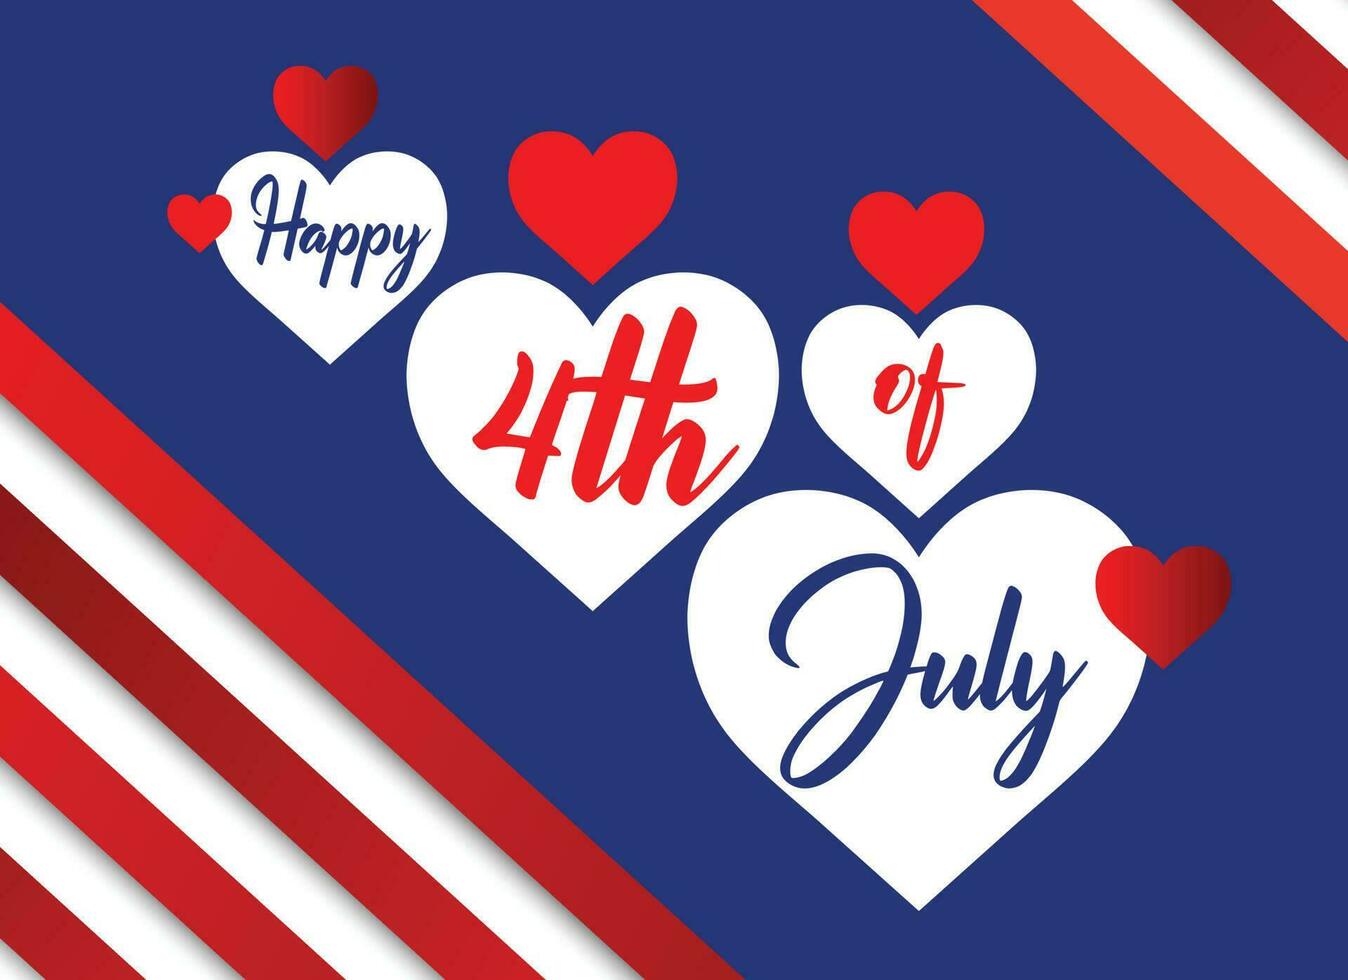 glücklich 4 .. von Juli USA Unabhängigkeit Tag patriotisch Banner Design vektor